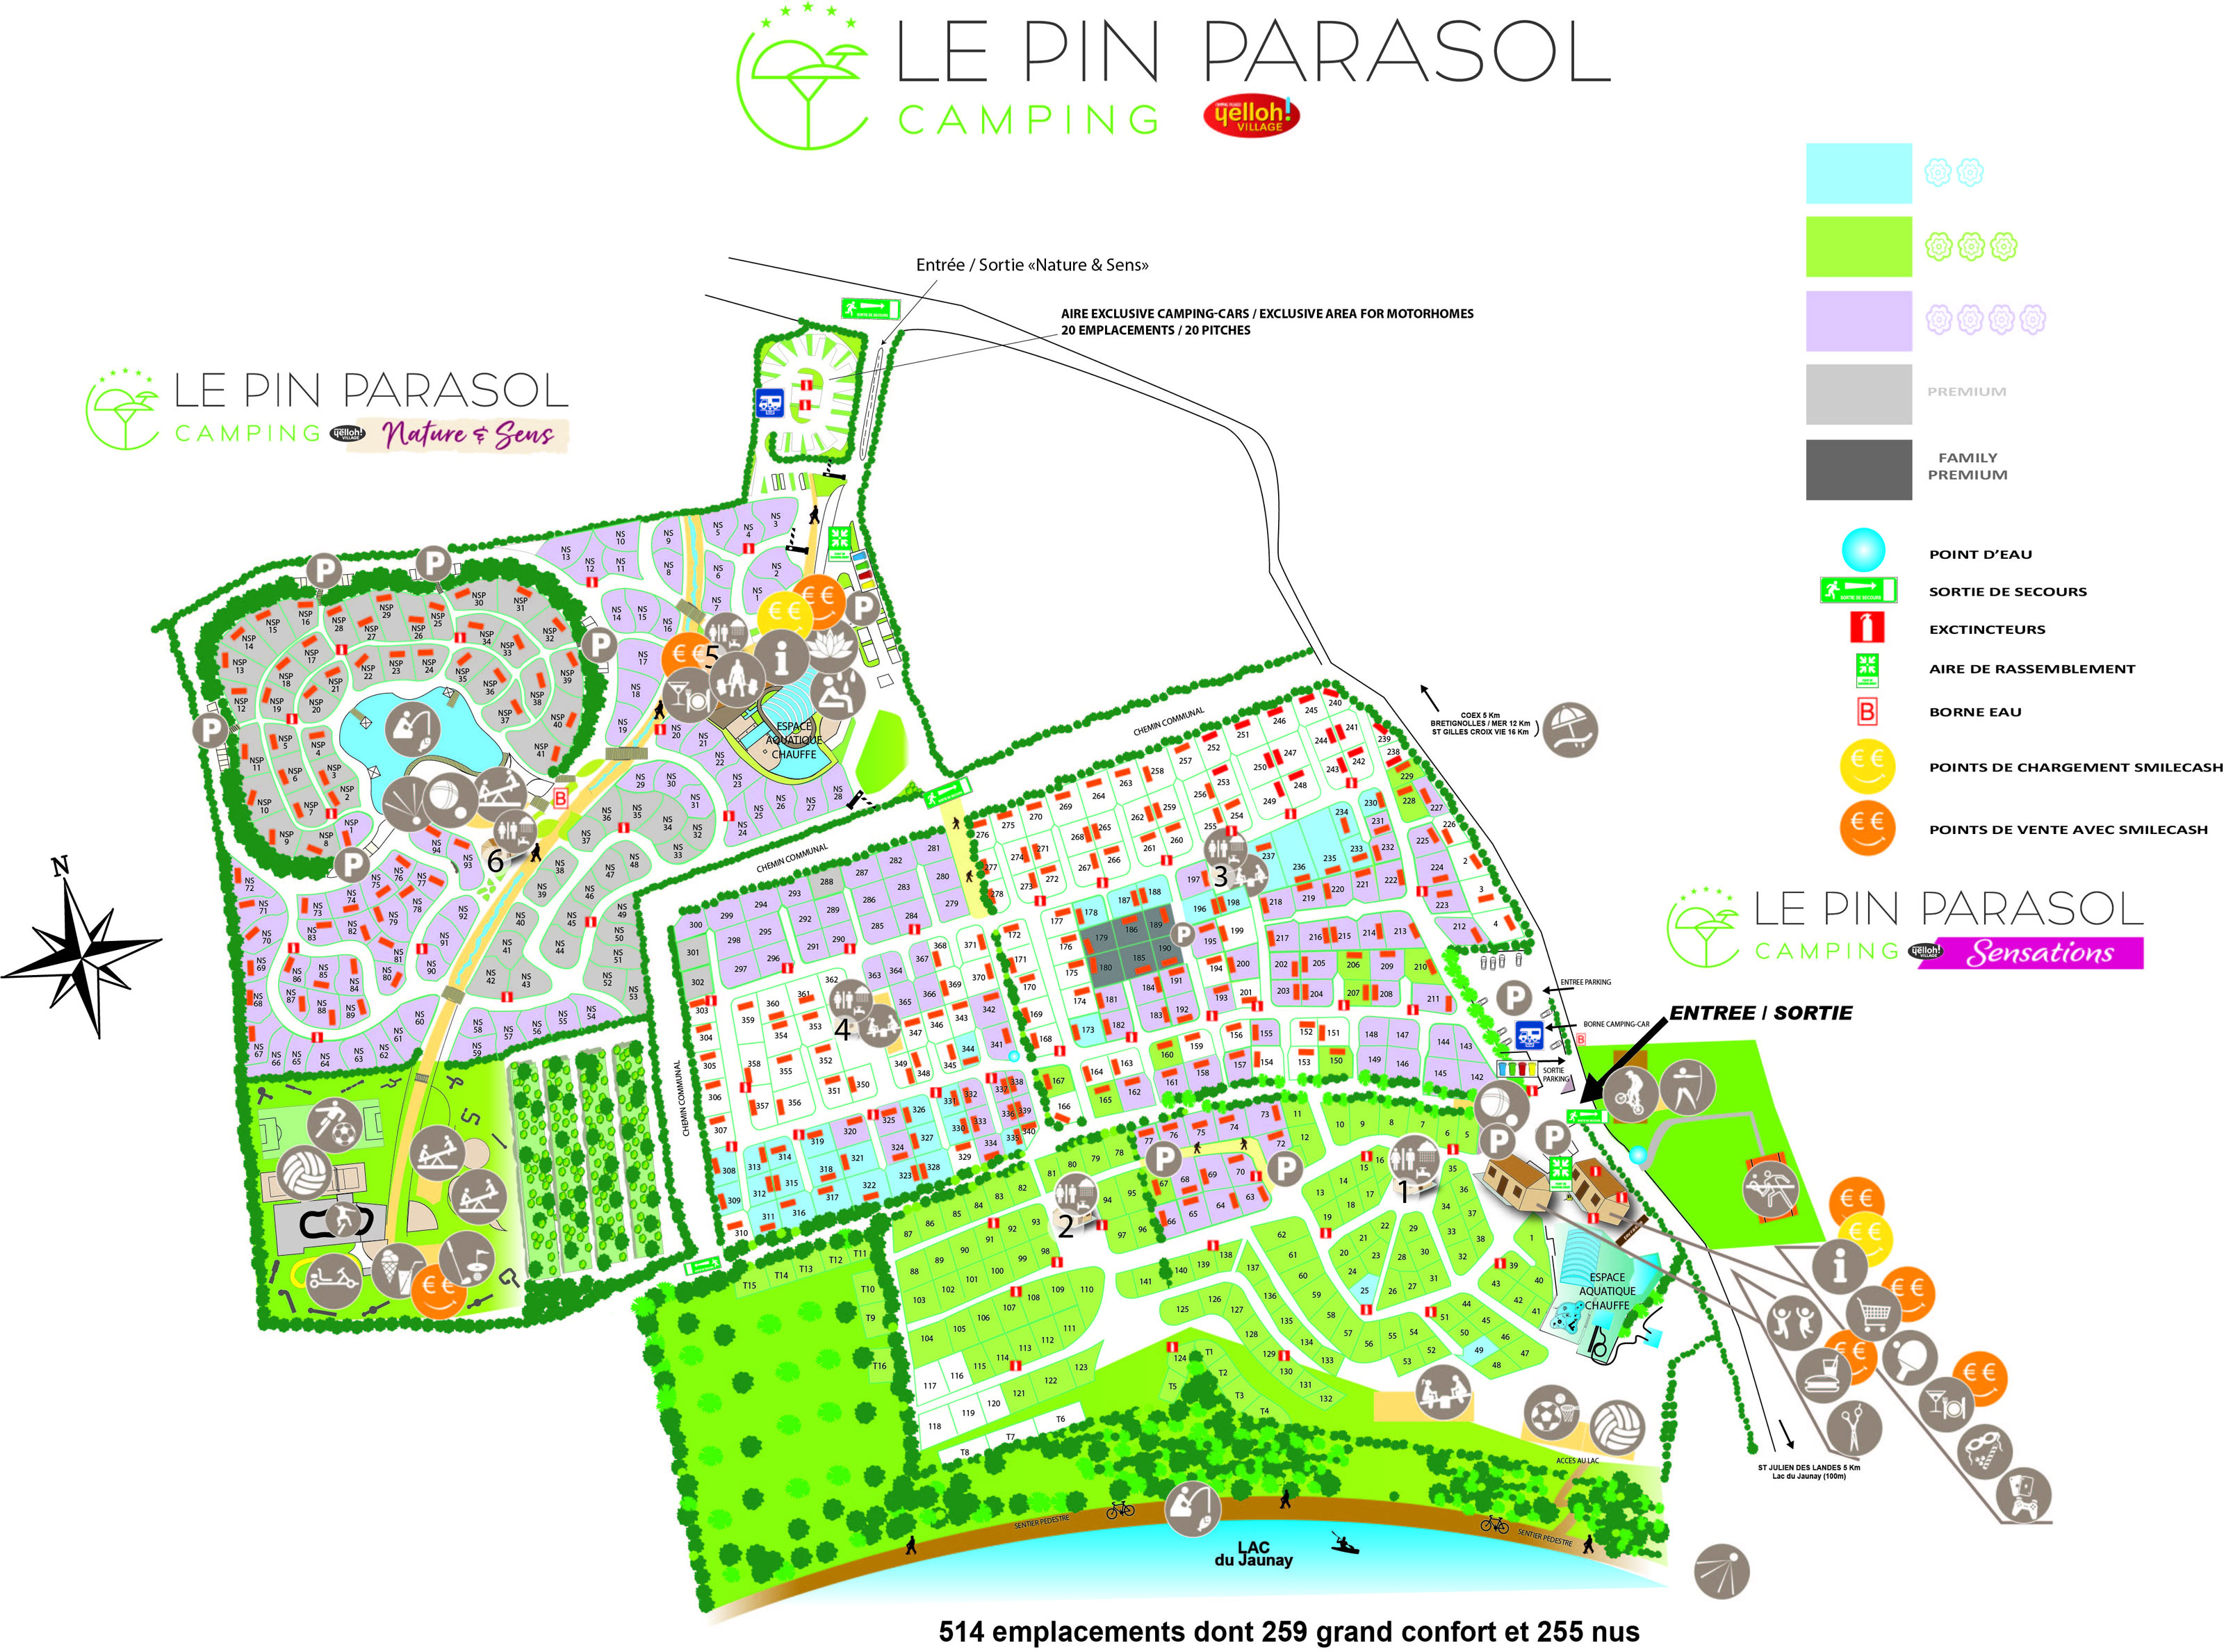 Campsite map Le Pin Parasol